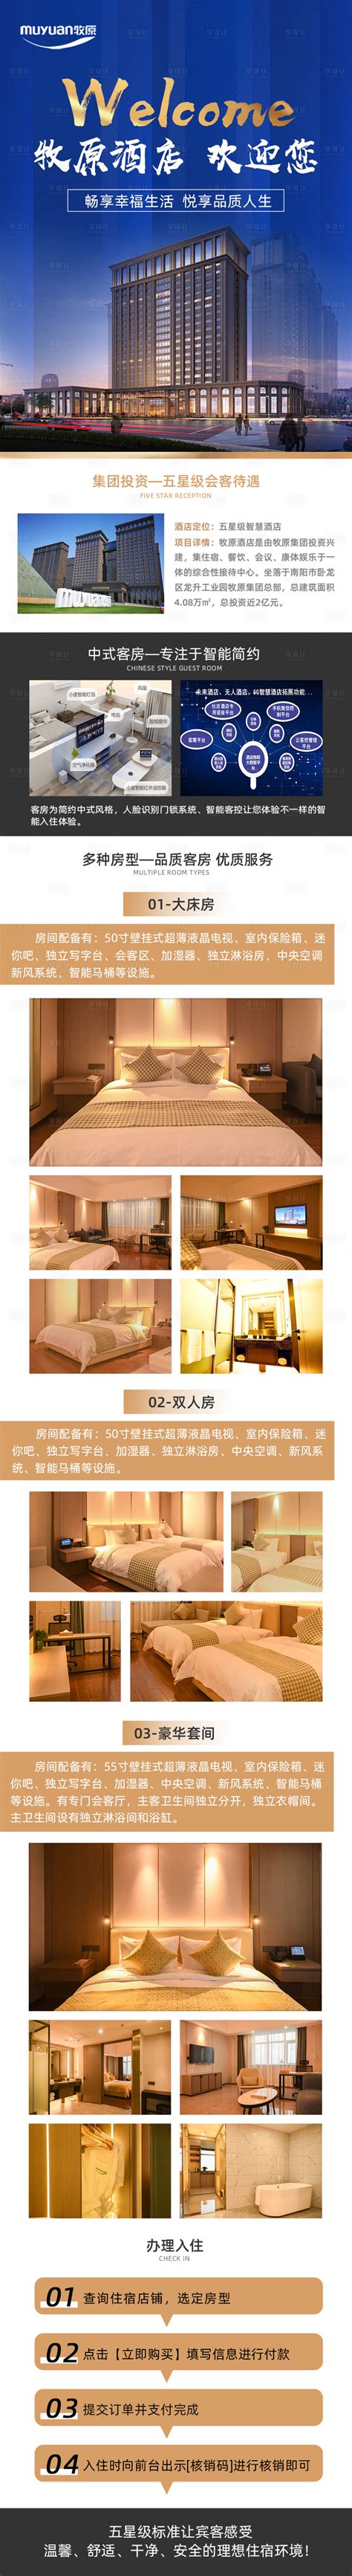 酒店介绍详情图系列PSD电商设计素材海报模板免费下载-享设计